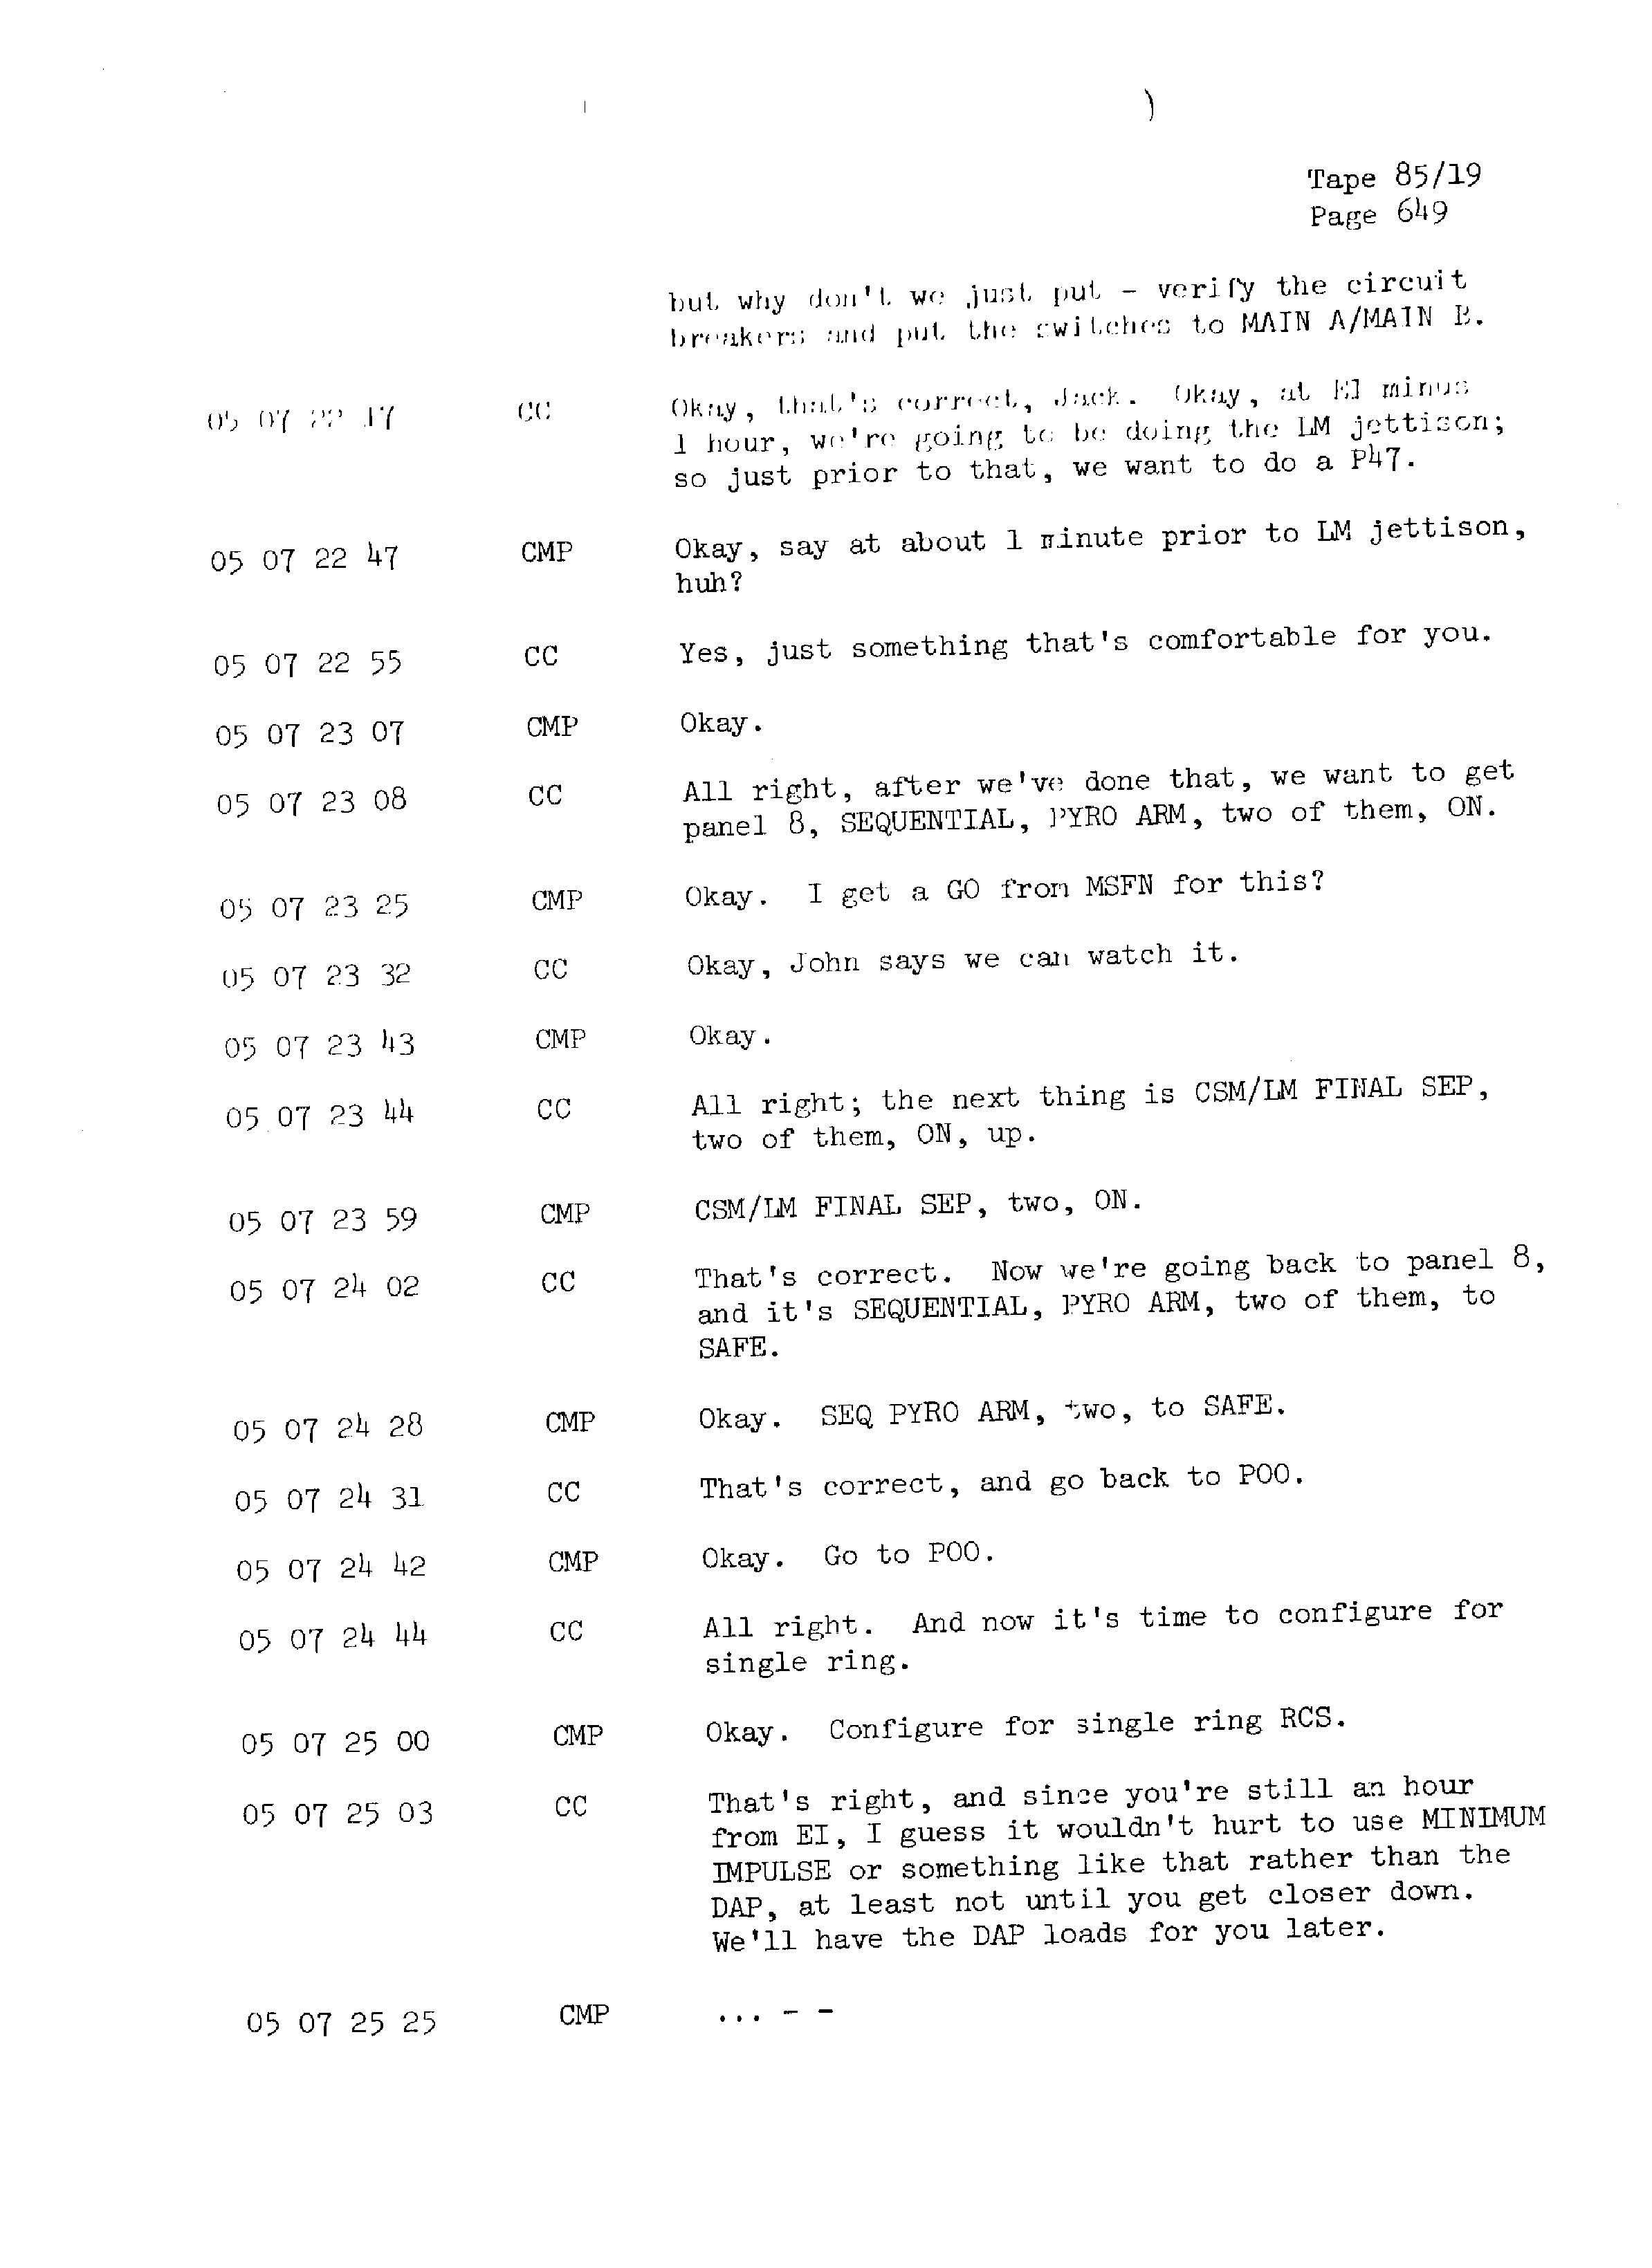 Page 656 of Apollo 13’s original transcript